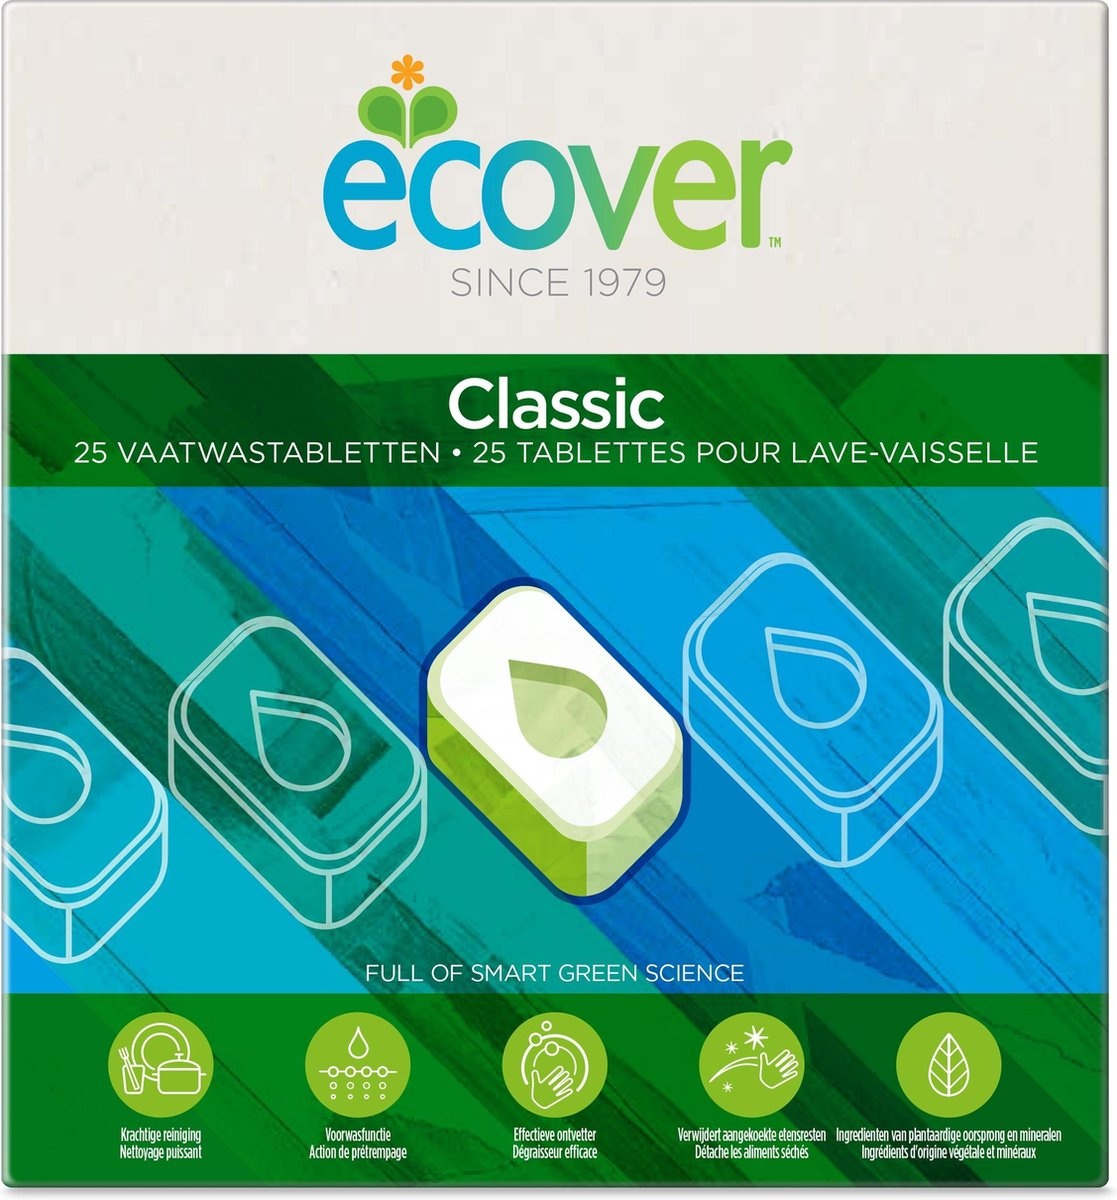 Ecover Tablettes Classic pour Lave-Vaisselle - Boutique en ligne